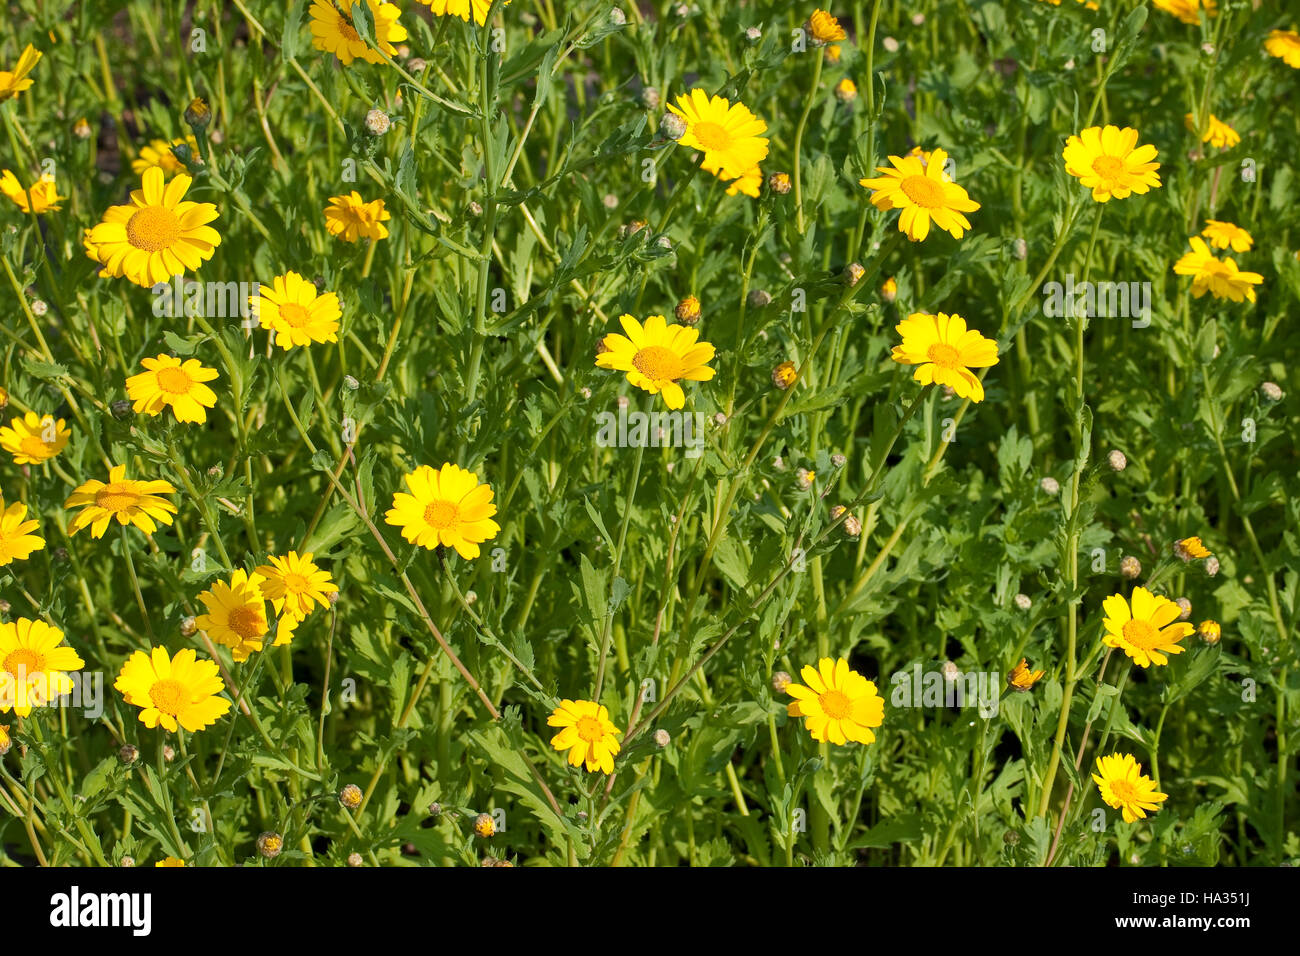 Saat-Wucherblume, Saatwucherblume, Saat- Wucherblume, Glebionis segetum, Chrysanthemum segetum, Corn Marigold Stock Photo